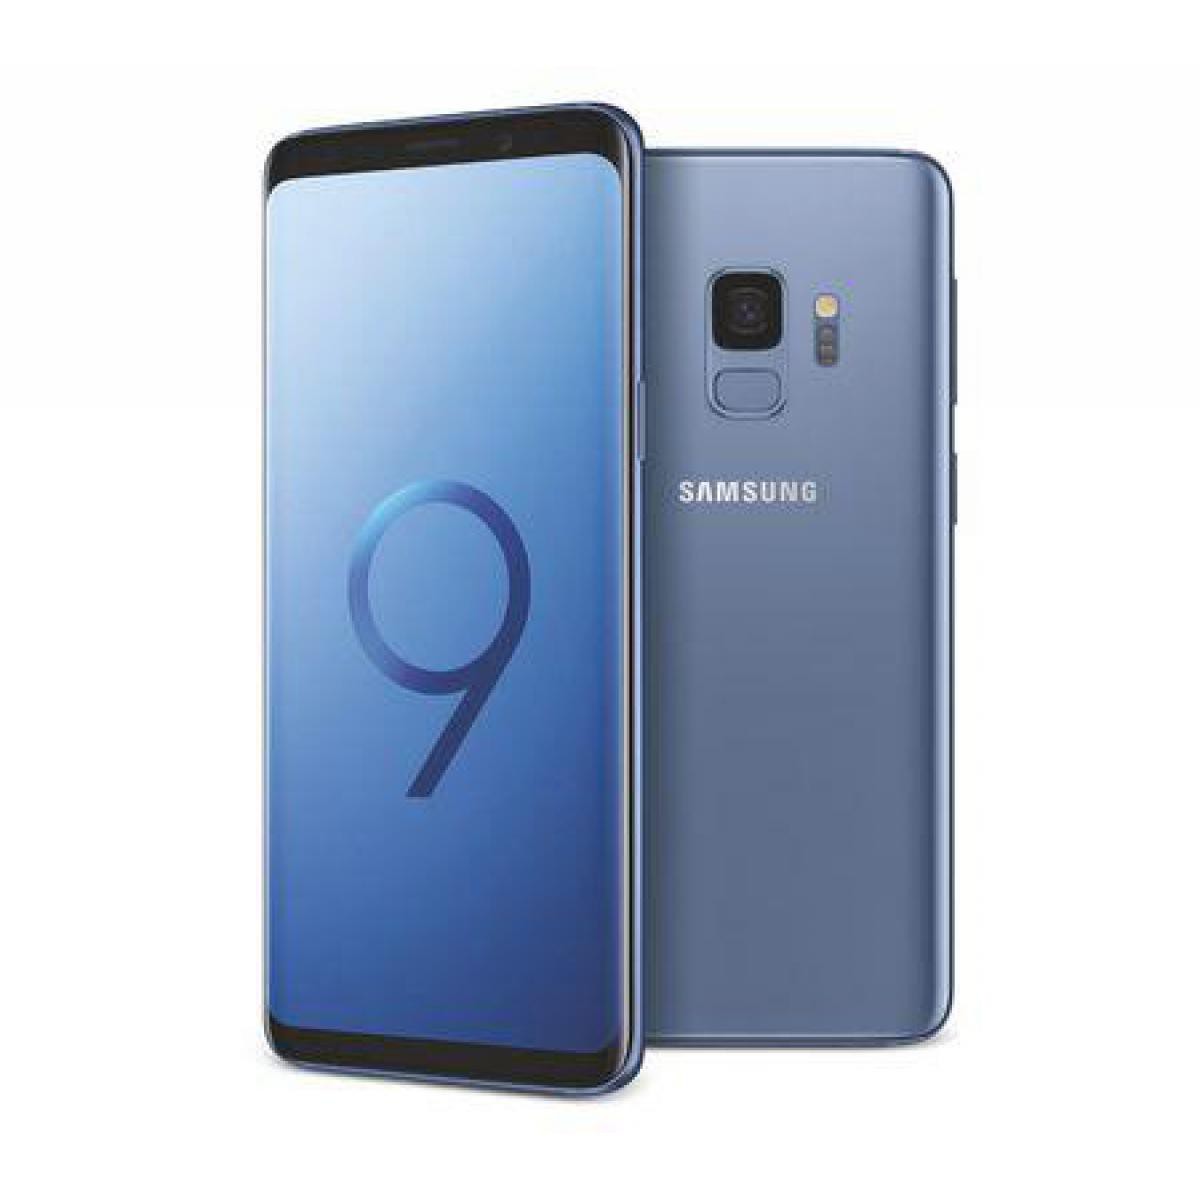 Samsung - Samsung Galaxy S9 128 Go Bleu - débloqué tout opérateur - Smartphone Android